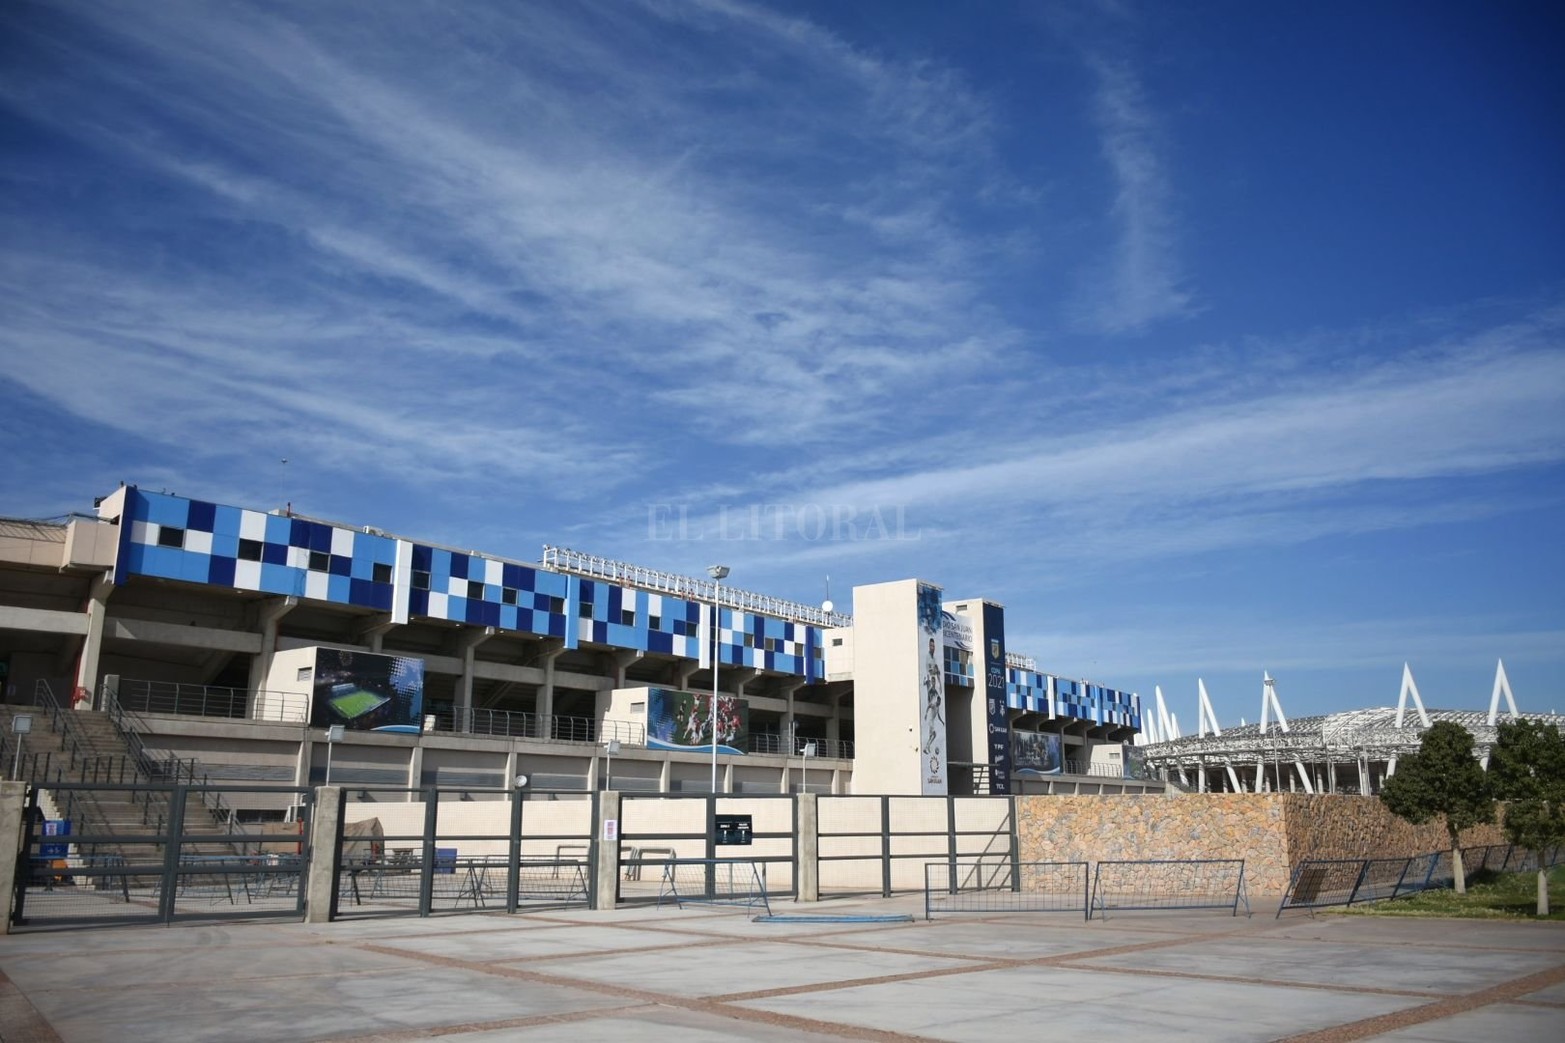 El San Juan del Bicentenario es un moderno estadio de fútbol que fue inaugurado en 2011. Cuenta con capacidad para más de 25000 espectadores.